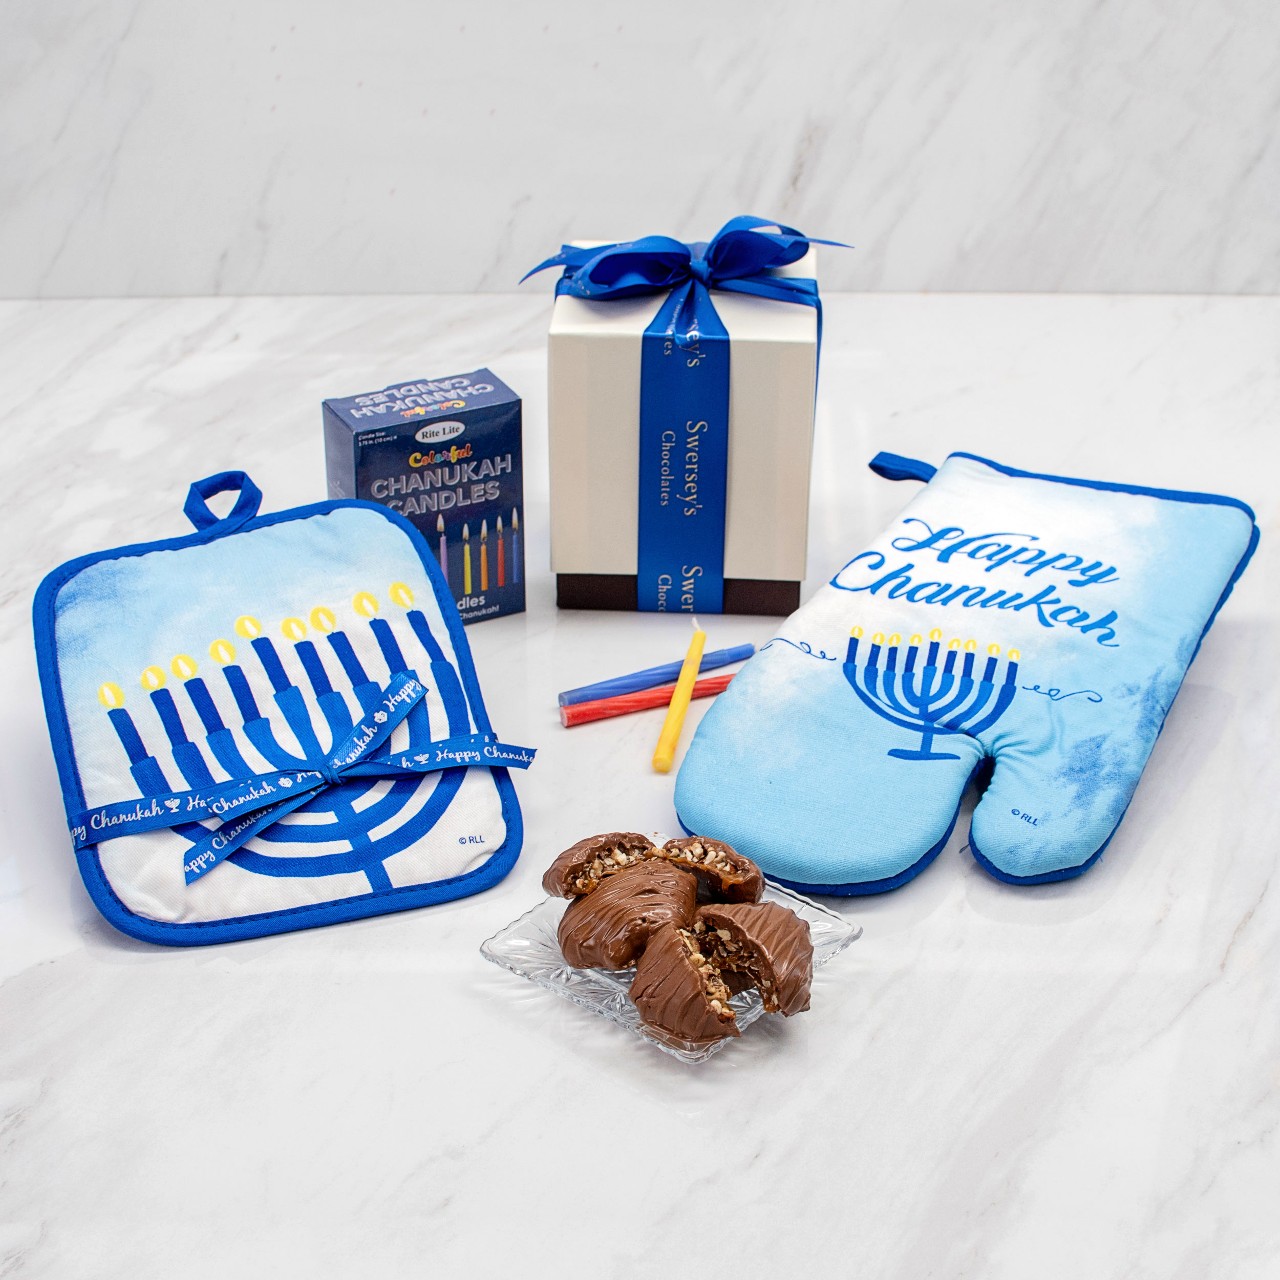 https://www.kosherline.com/wp-content/uploads/2022/11/happy-hanukkah-oven-mitt-and-chocolate-gift-set-1.jpg